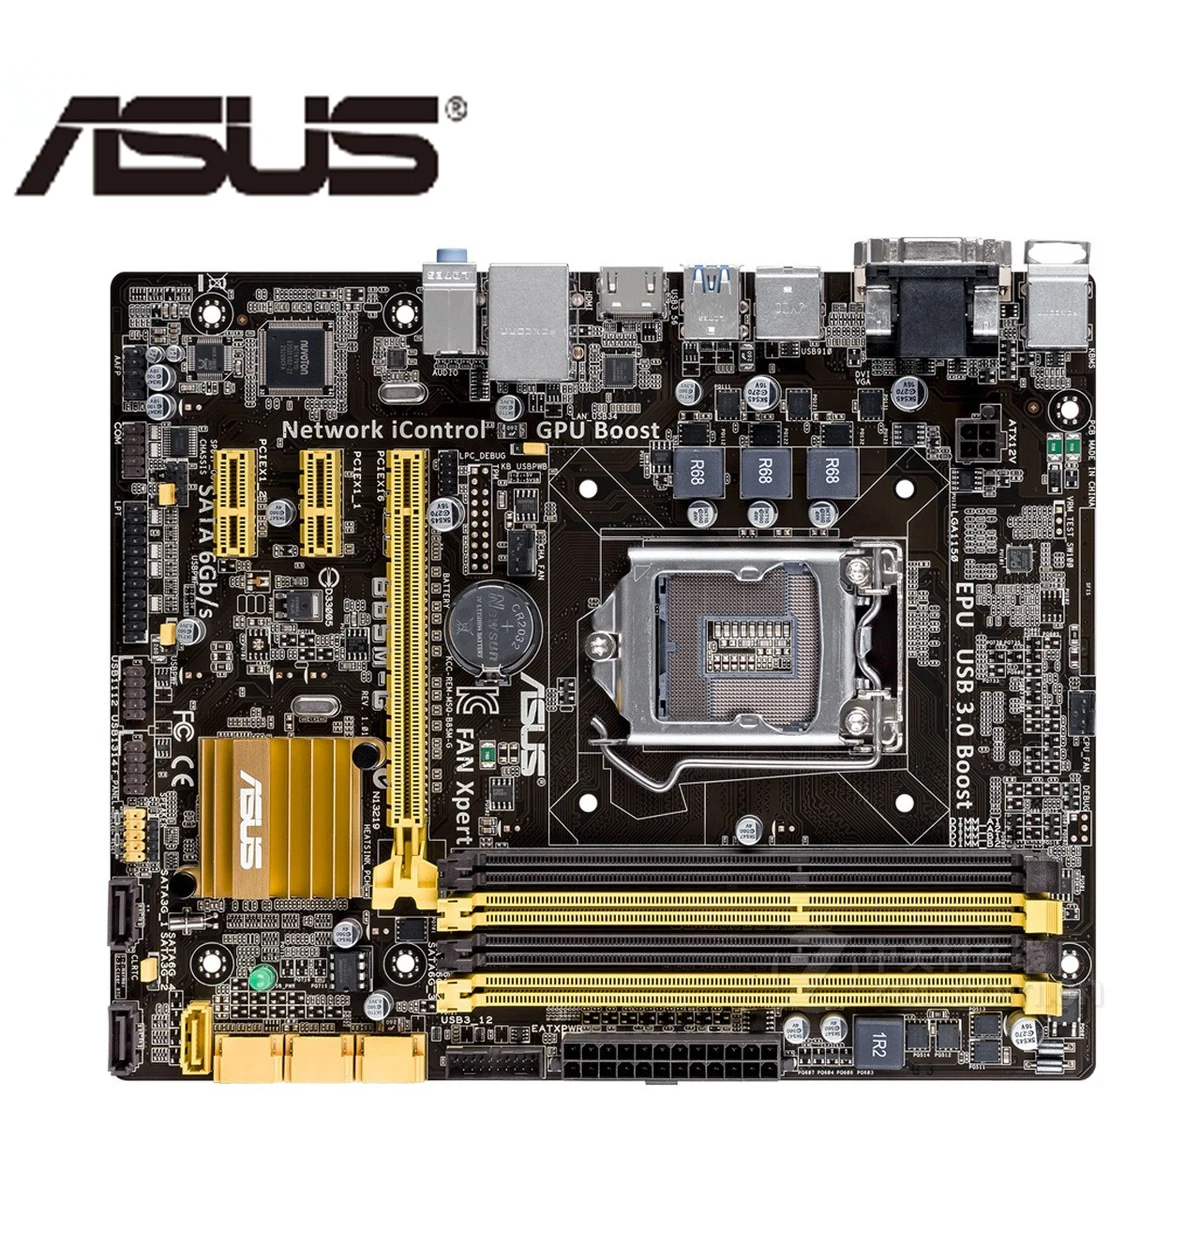 Материнская плата ASUS M4N68T-M LE V2 M-ATX системная плата с разъемом AM3 M4N68T DDR NVIDIA GeForce 7025/nForce 630a настольная материнская плата